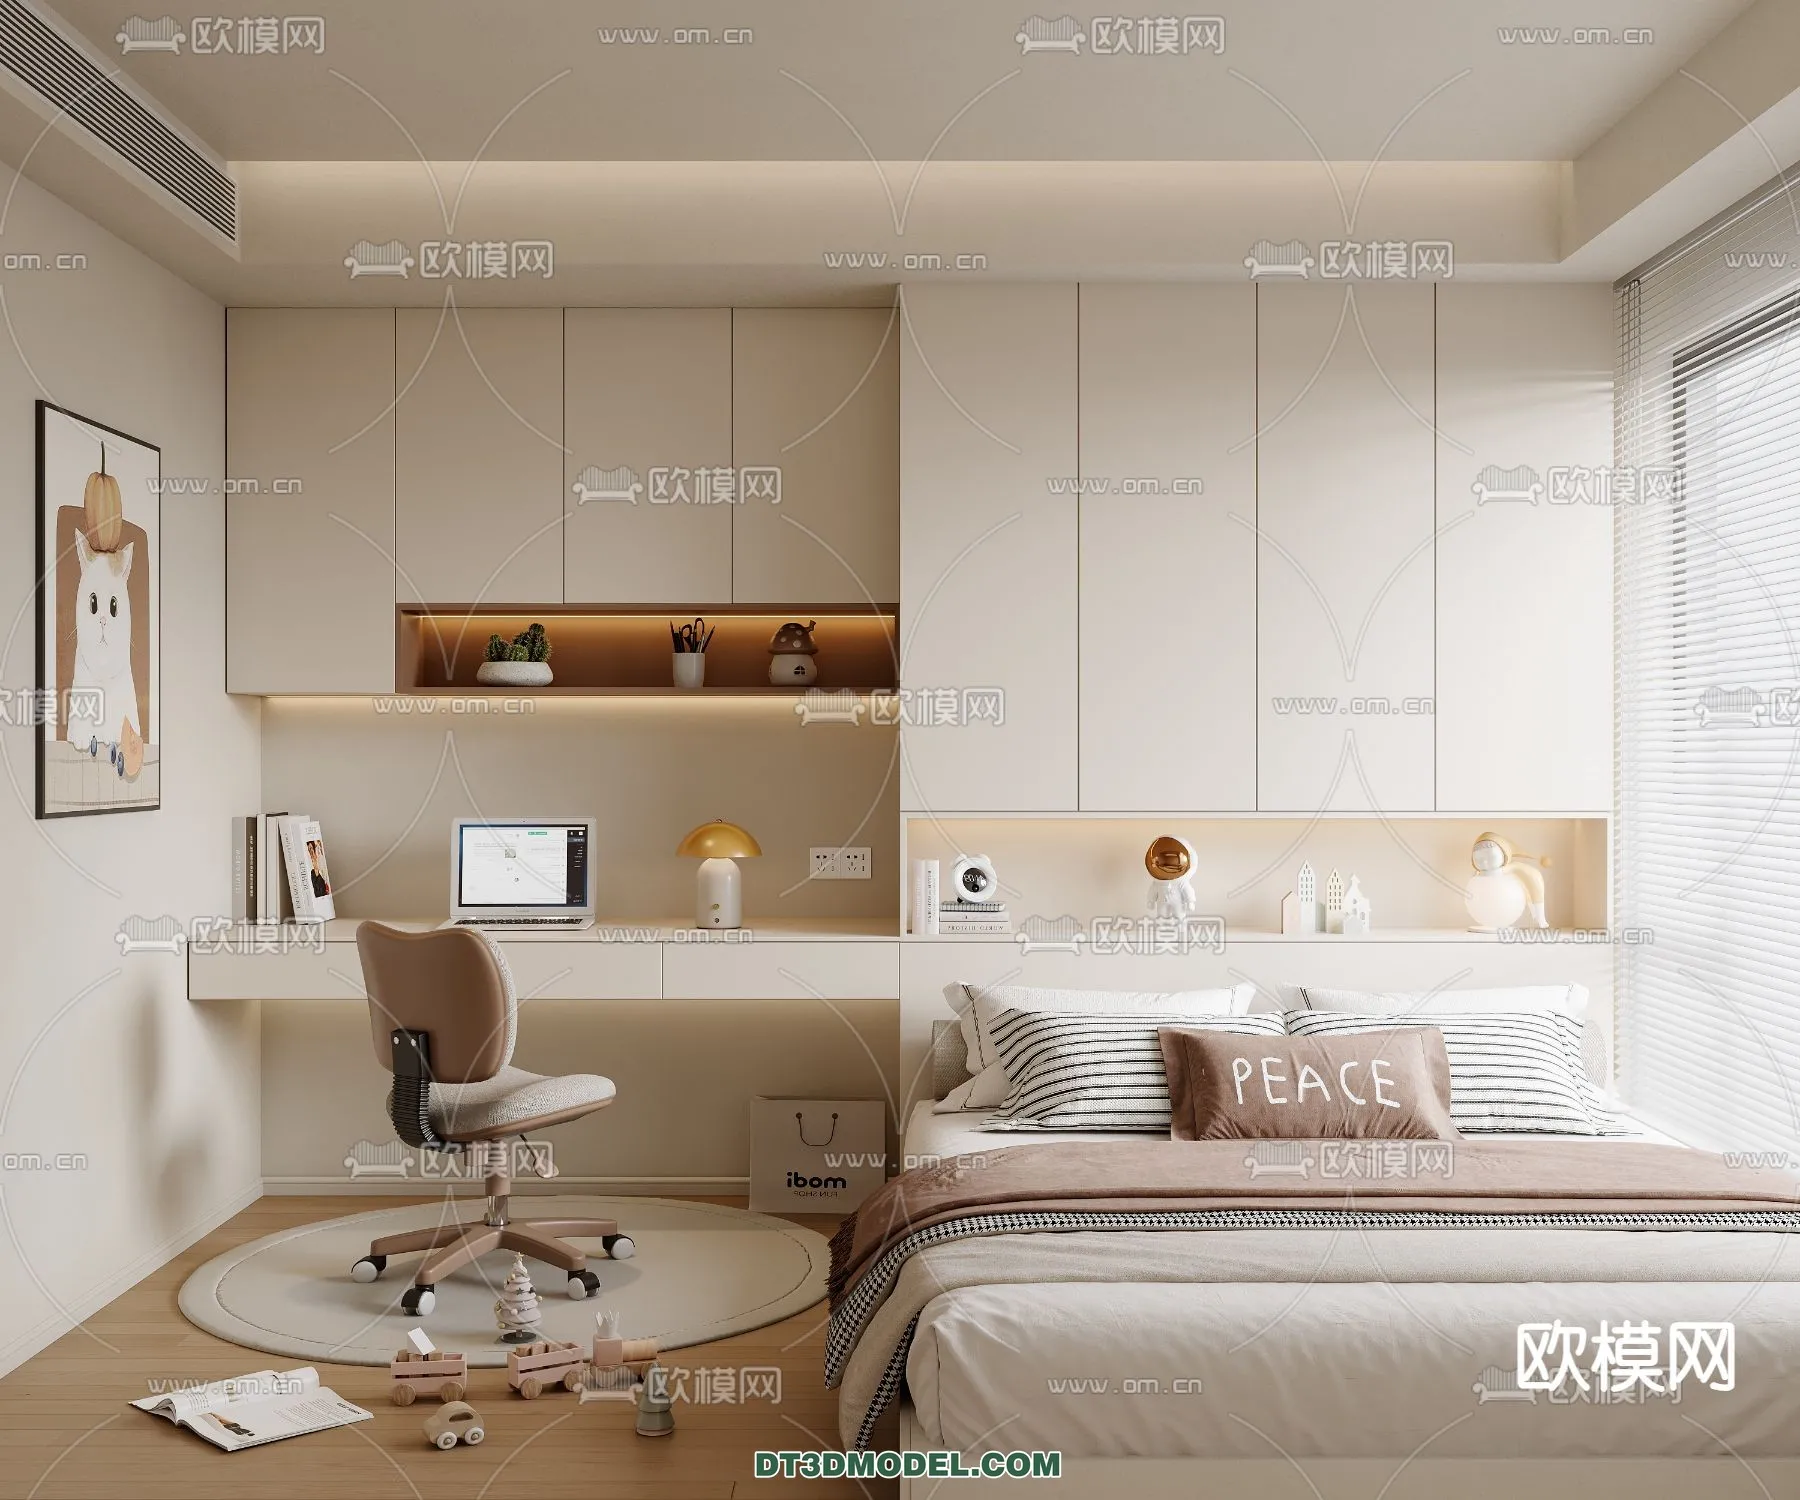 Tatami Bedroom – Japan Bedroom – 3D Scene – 056